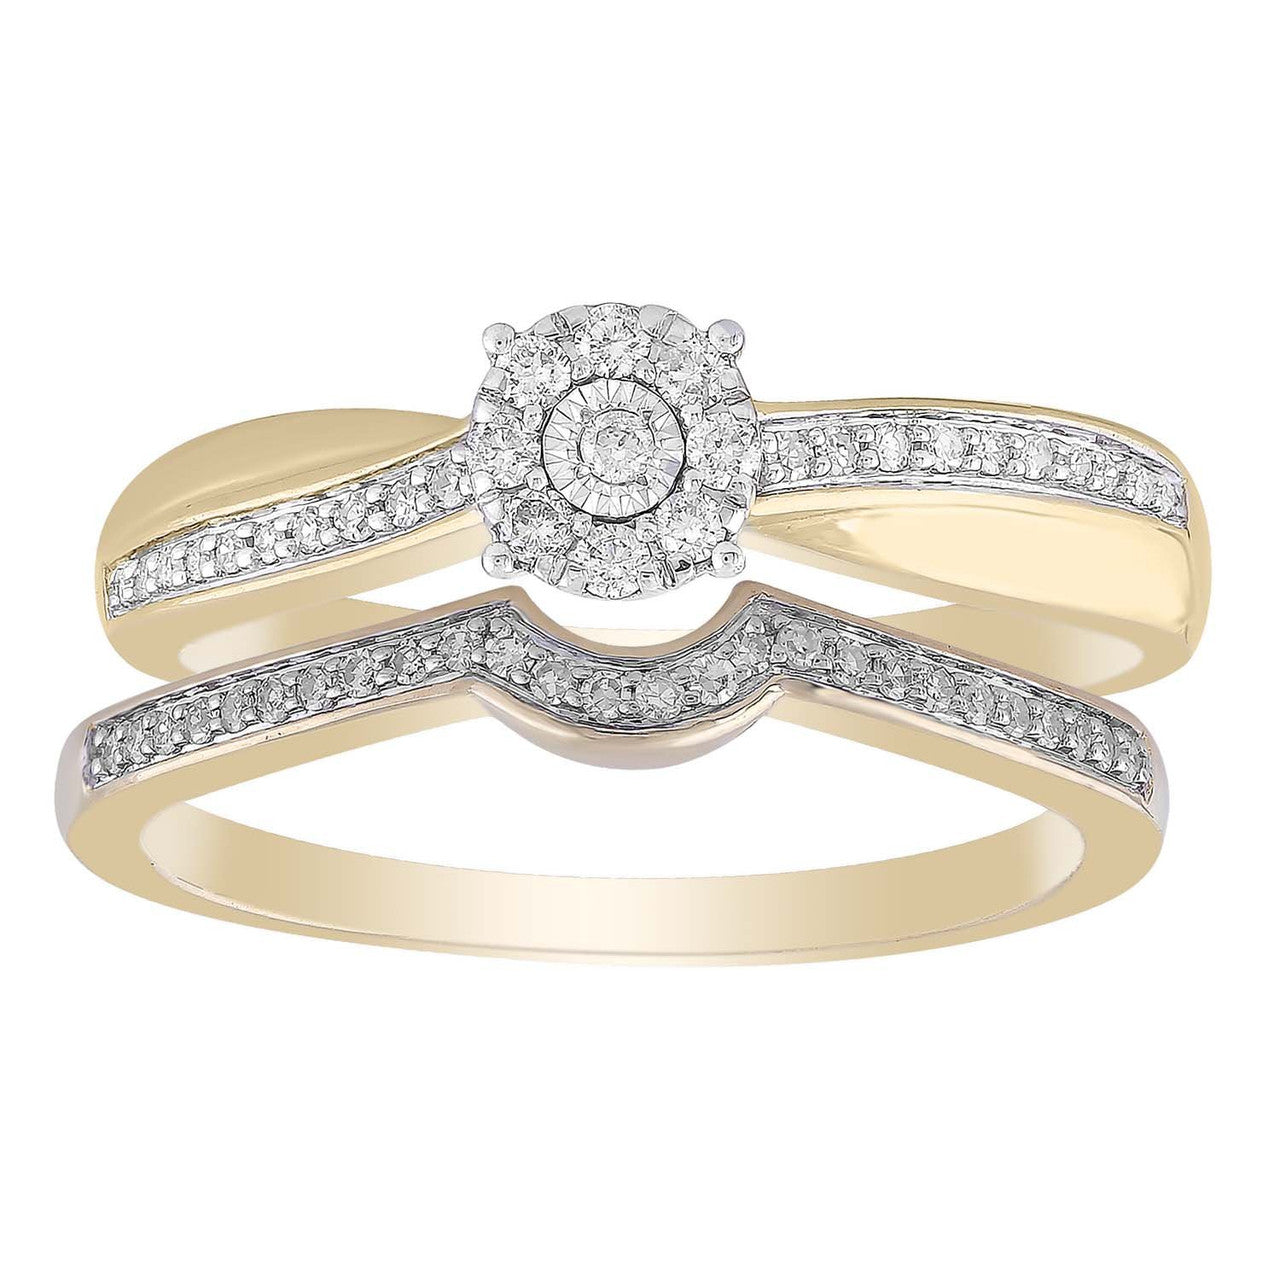 Ice Jewellery Ring Set with 0.25ct Diamond in 9K Yellow Gold -  IGR-38266-025-Y | Ice Jewellery Australia